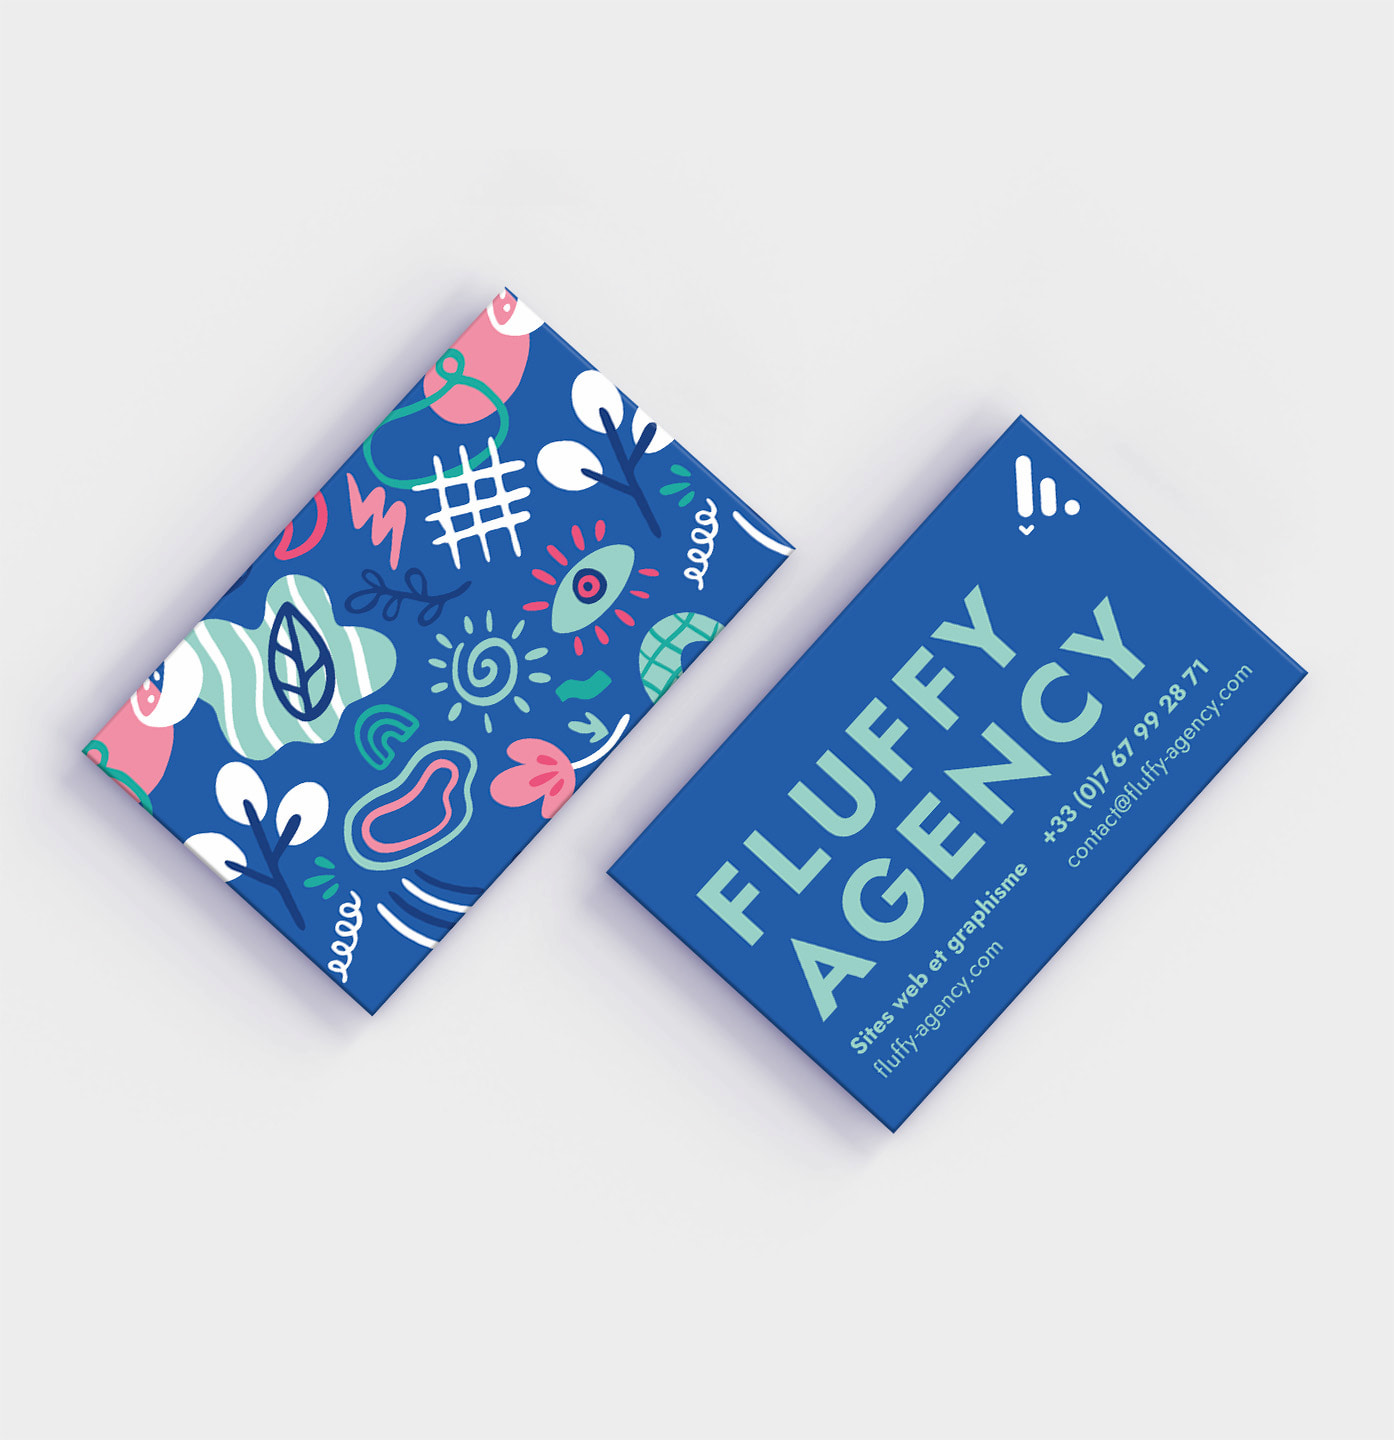 La création graphique des cartes de visite de Fluffy Agency